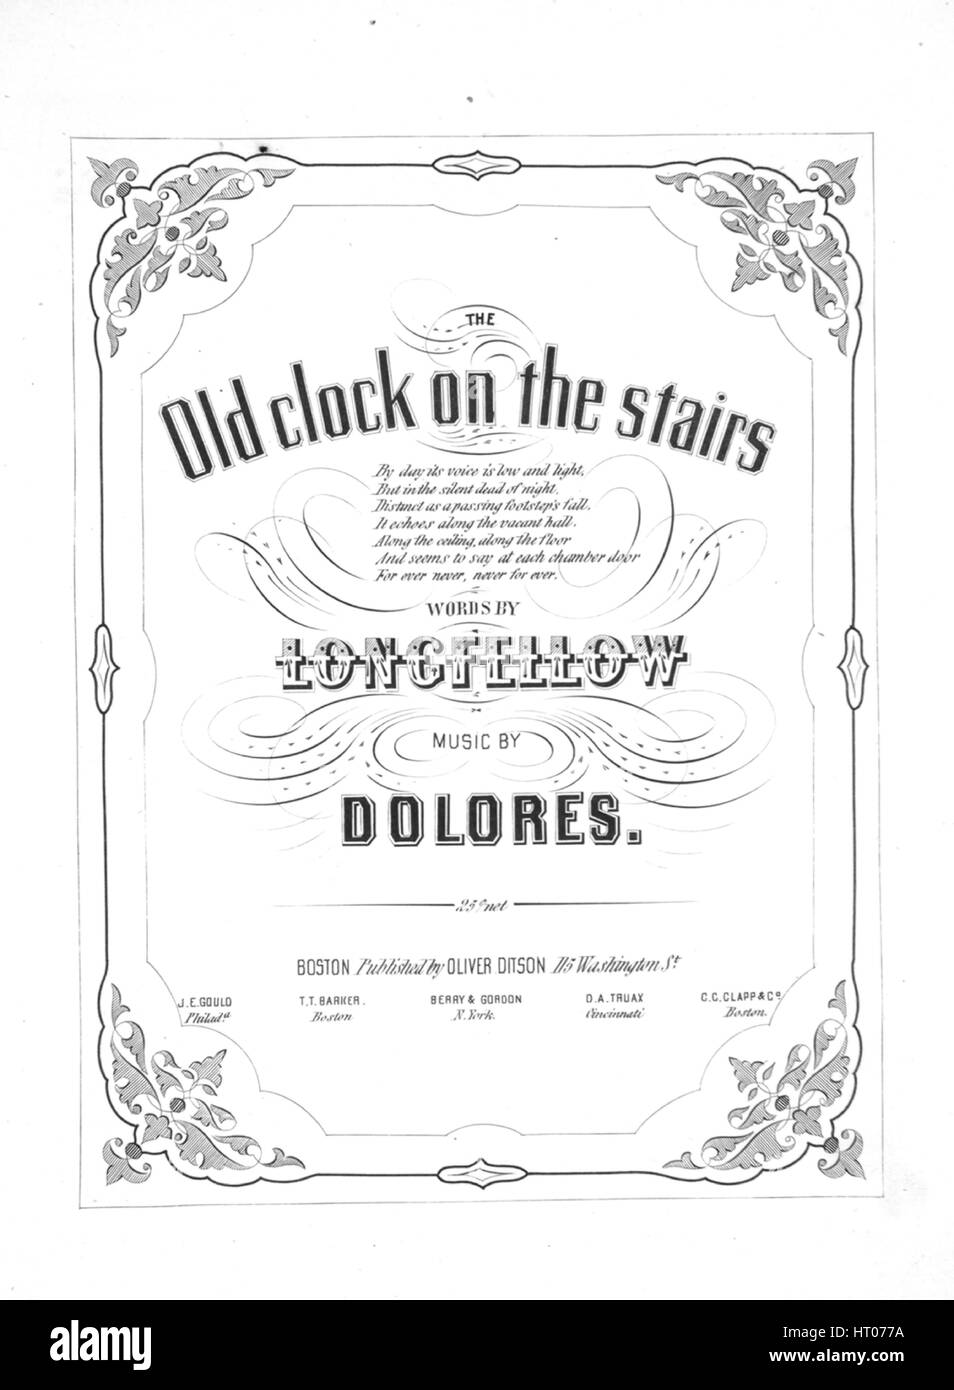 Importancia Médula ósea martes Imagen de cubierta de partituras de la canción "El Viejo reloj de las  Escaleras", con notas de autoría original leyendo 'Palabras [por] Henry  Wadsworth Longfellow música por dolores', Estados Unidos, 1900. El